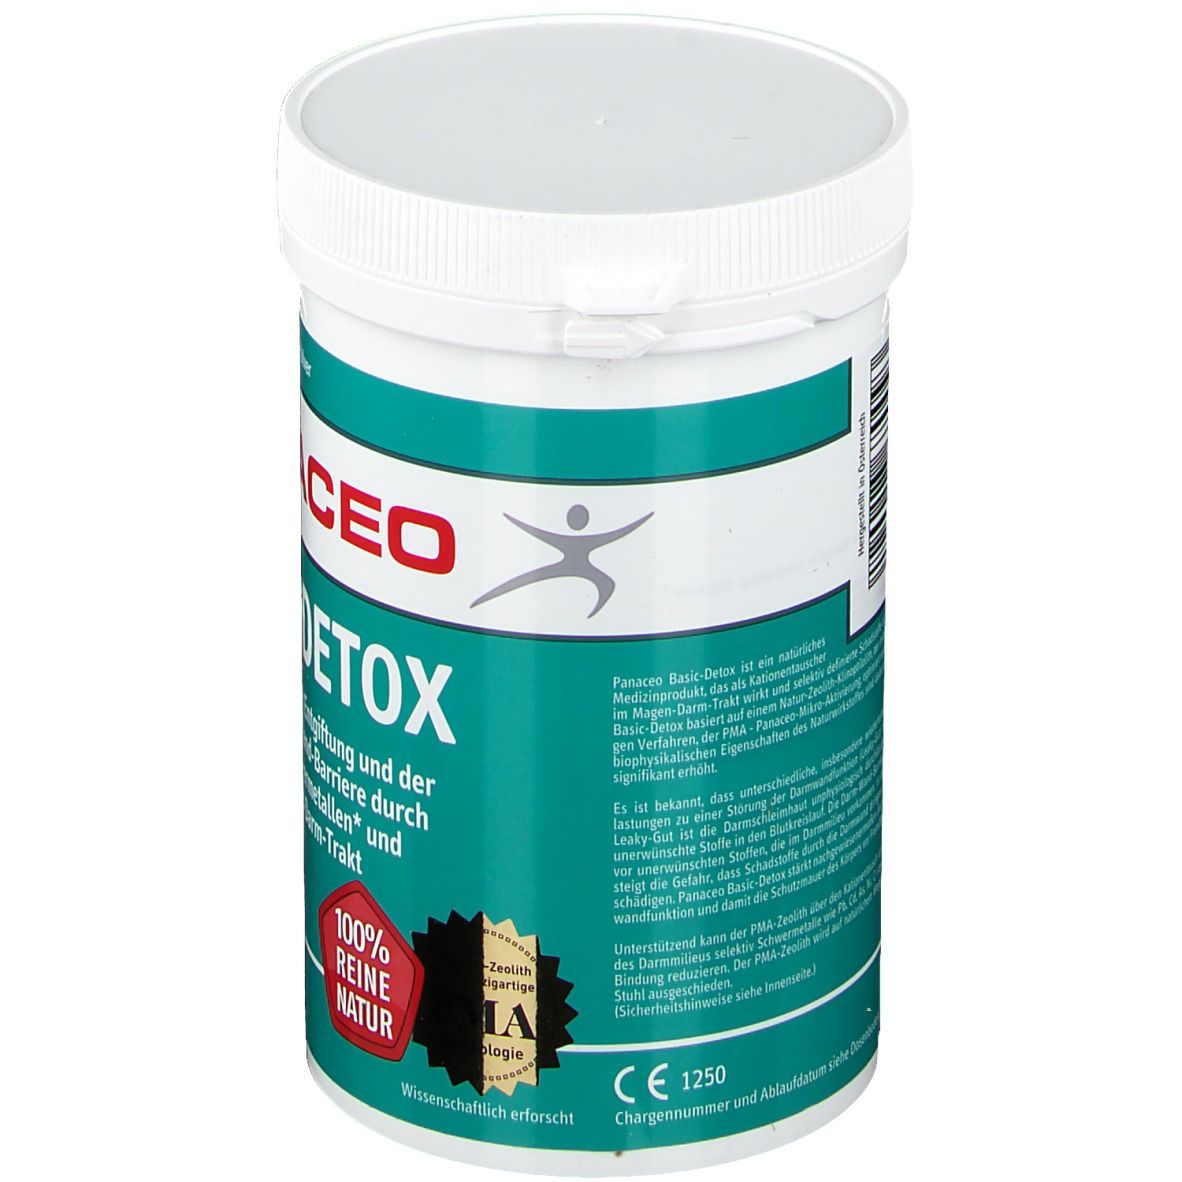 PANACEO Basic-Detox